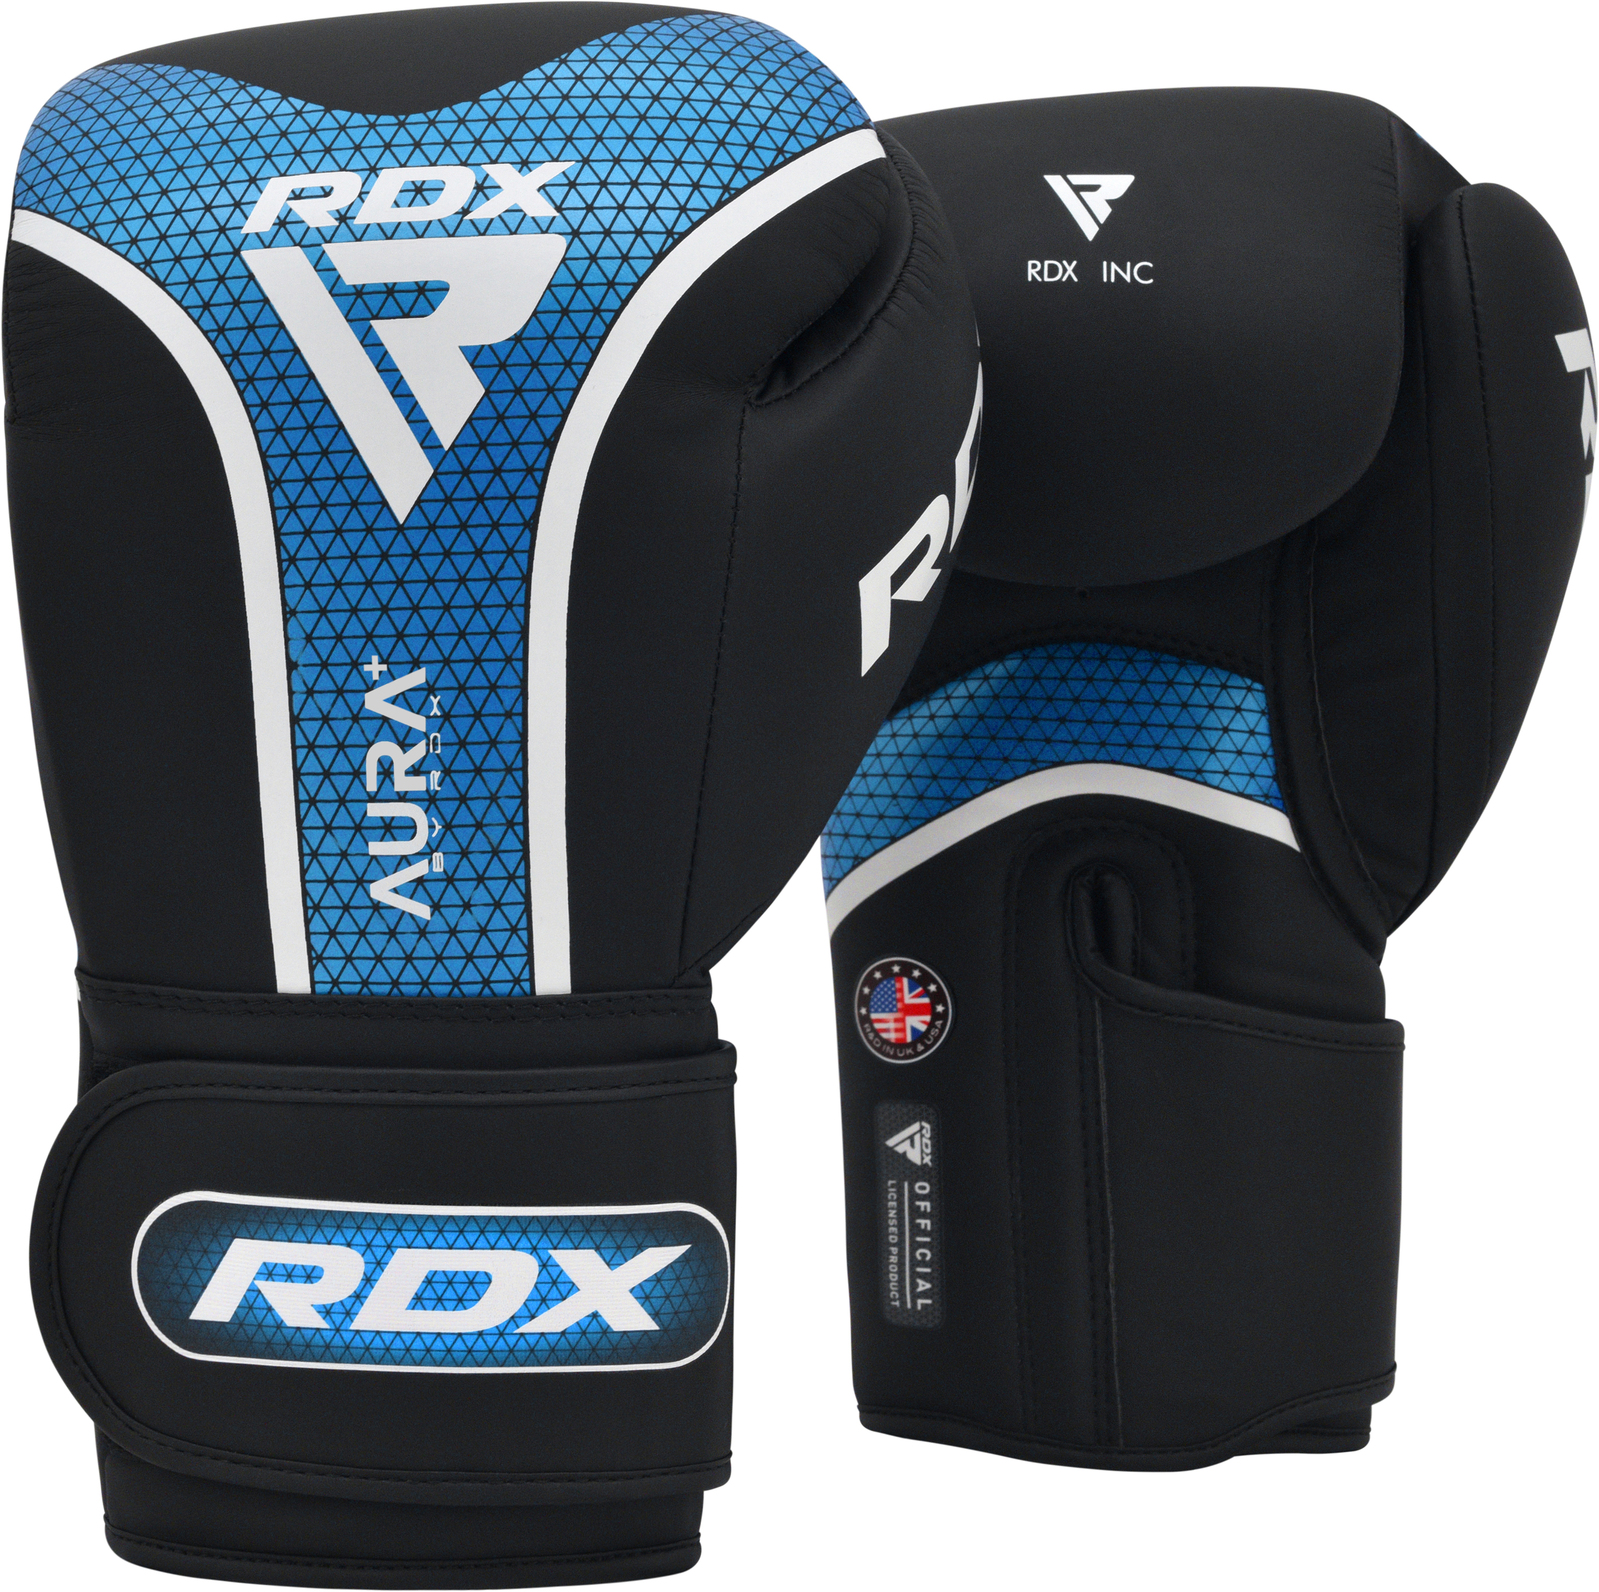 RDX - T17 Aura Plus Boxing Gloves - Blue